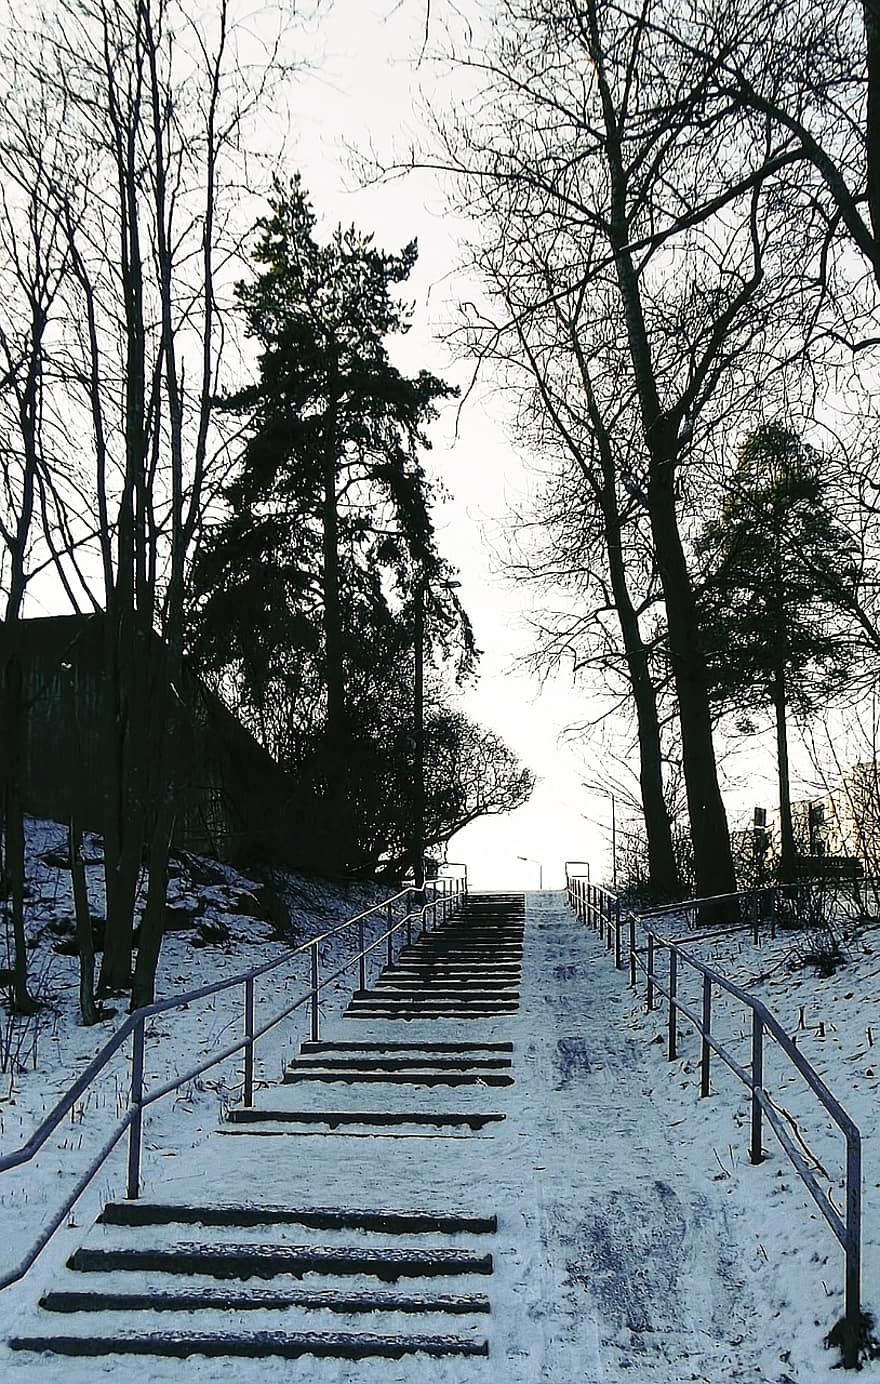 Treppe, Bäume, Schnee, Eis, Frost, gefroren, kalt, draußen, Winter, Baluster